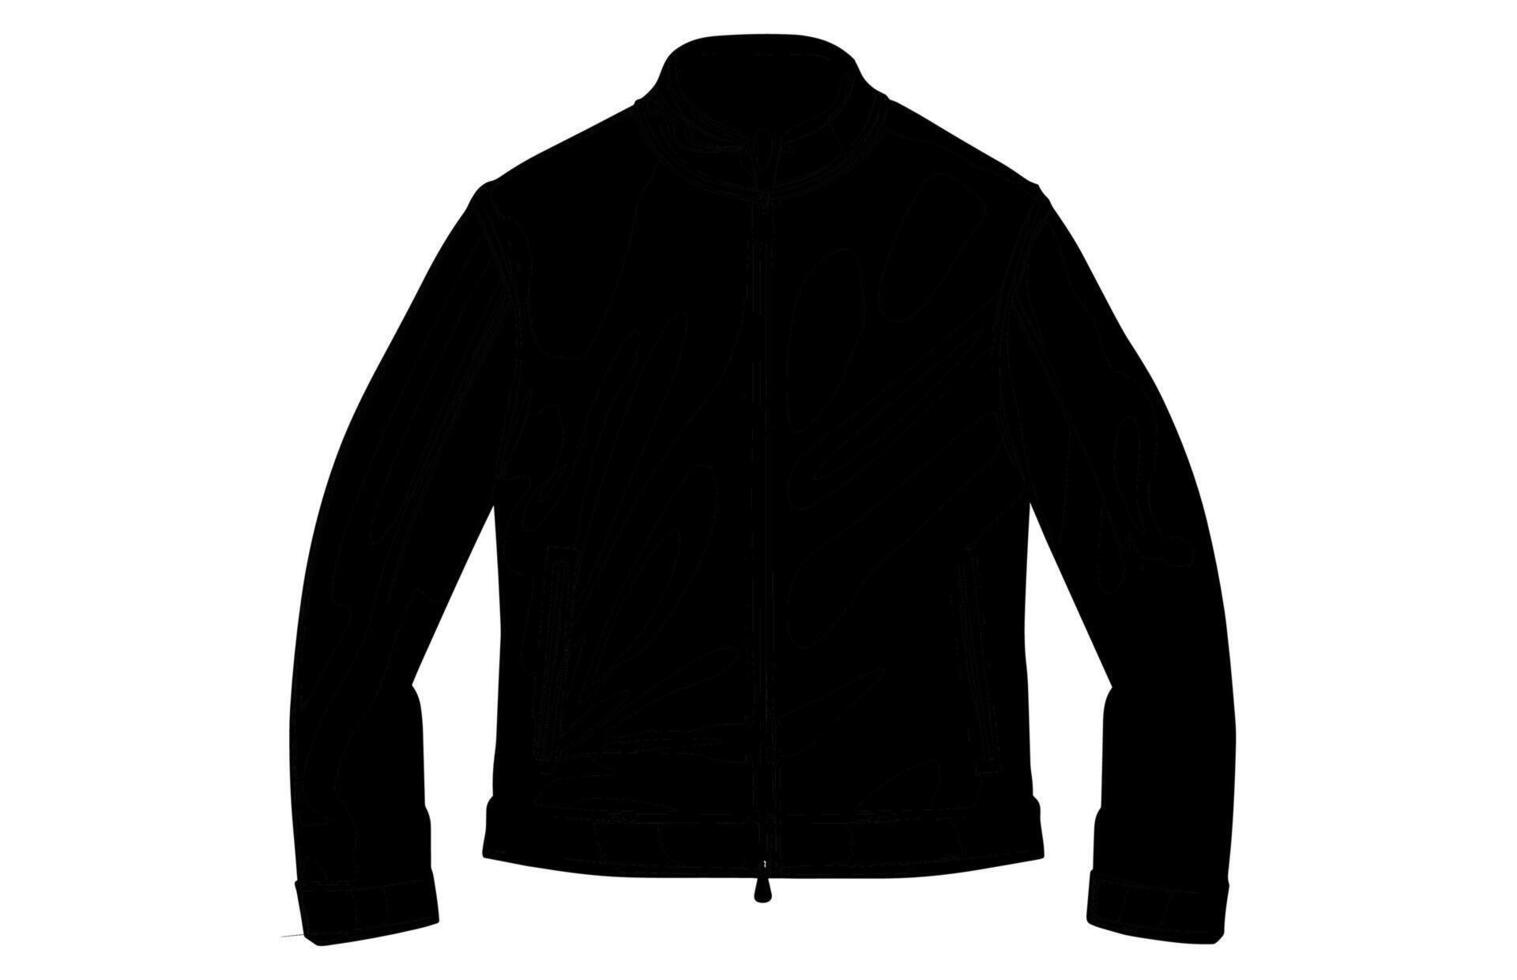 cuero chaqueta vector silueta ilustración, de los hombres casual ropa, clásico motorista chaqueta.